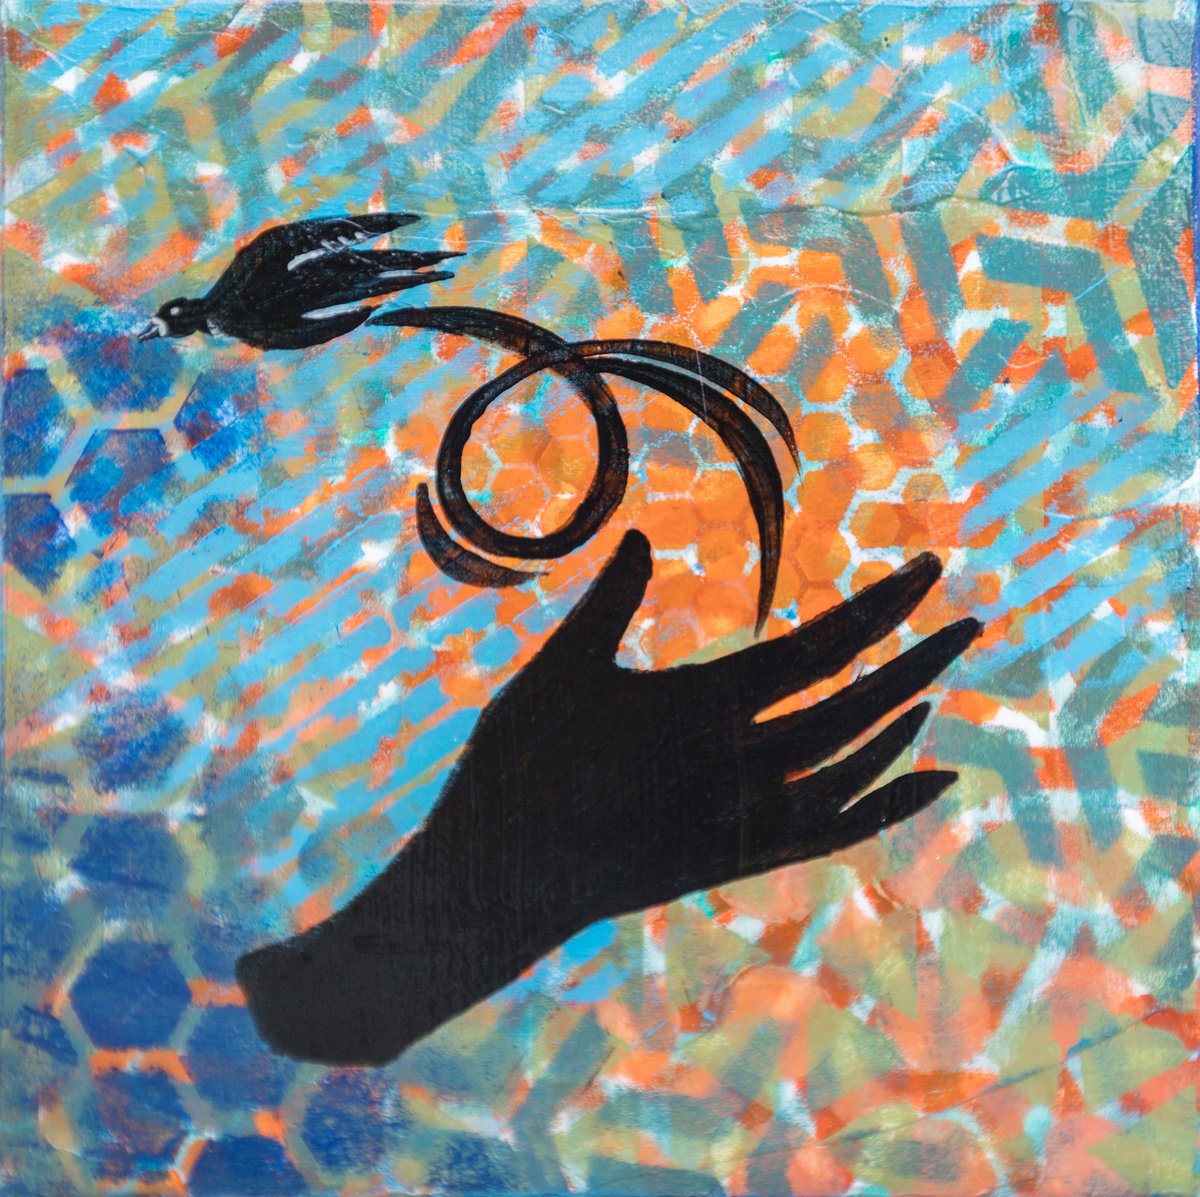 Hands giving 2 by Ariadna de Raadt